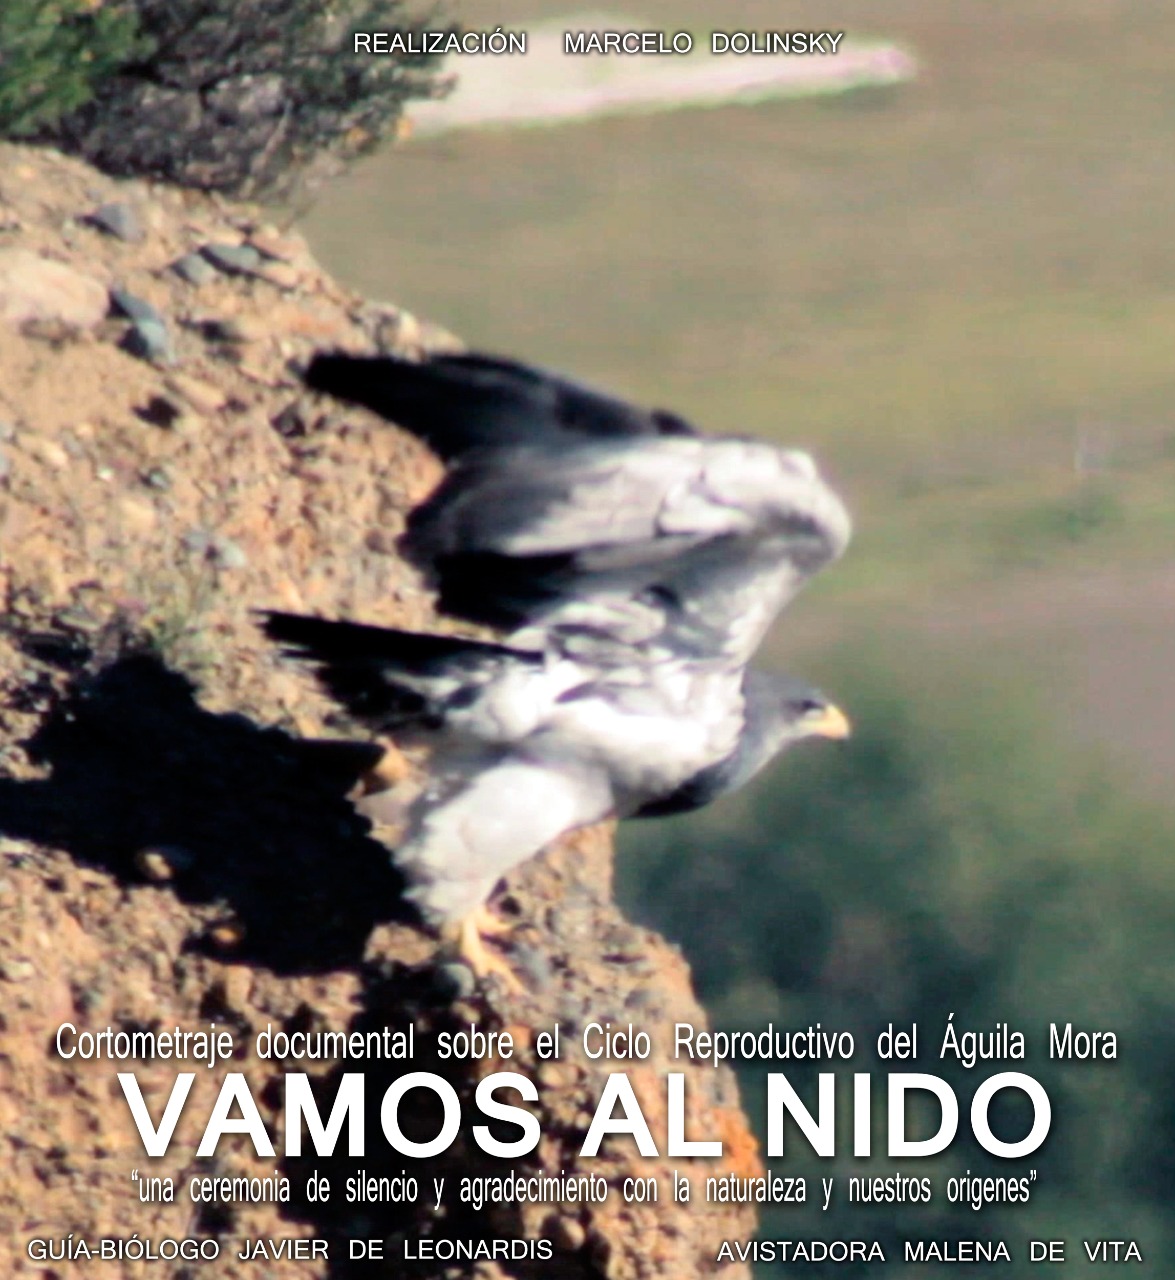 Comenzó la presentación del cortometraje “Vamos al nido” en Esquel y Trevelin